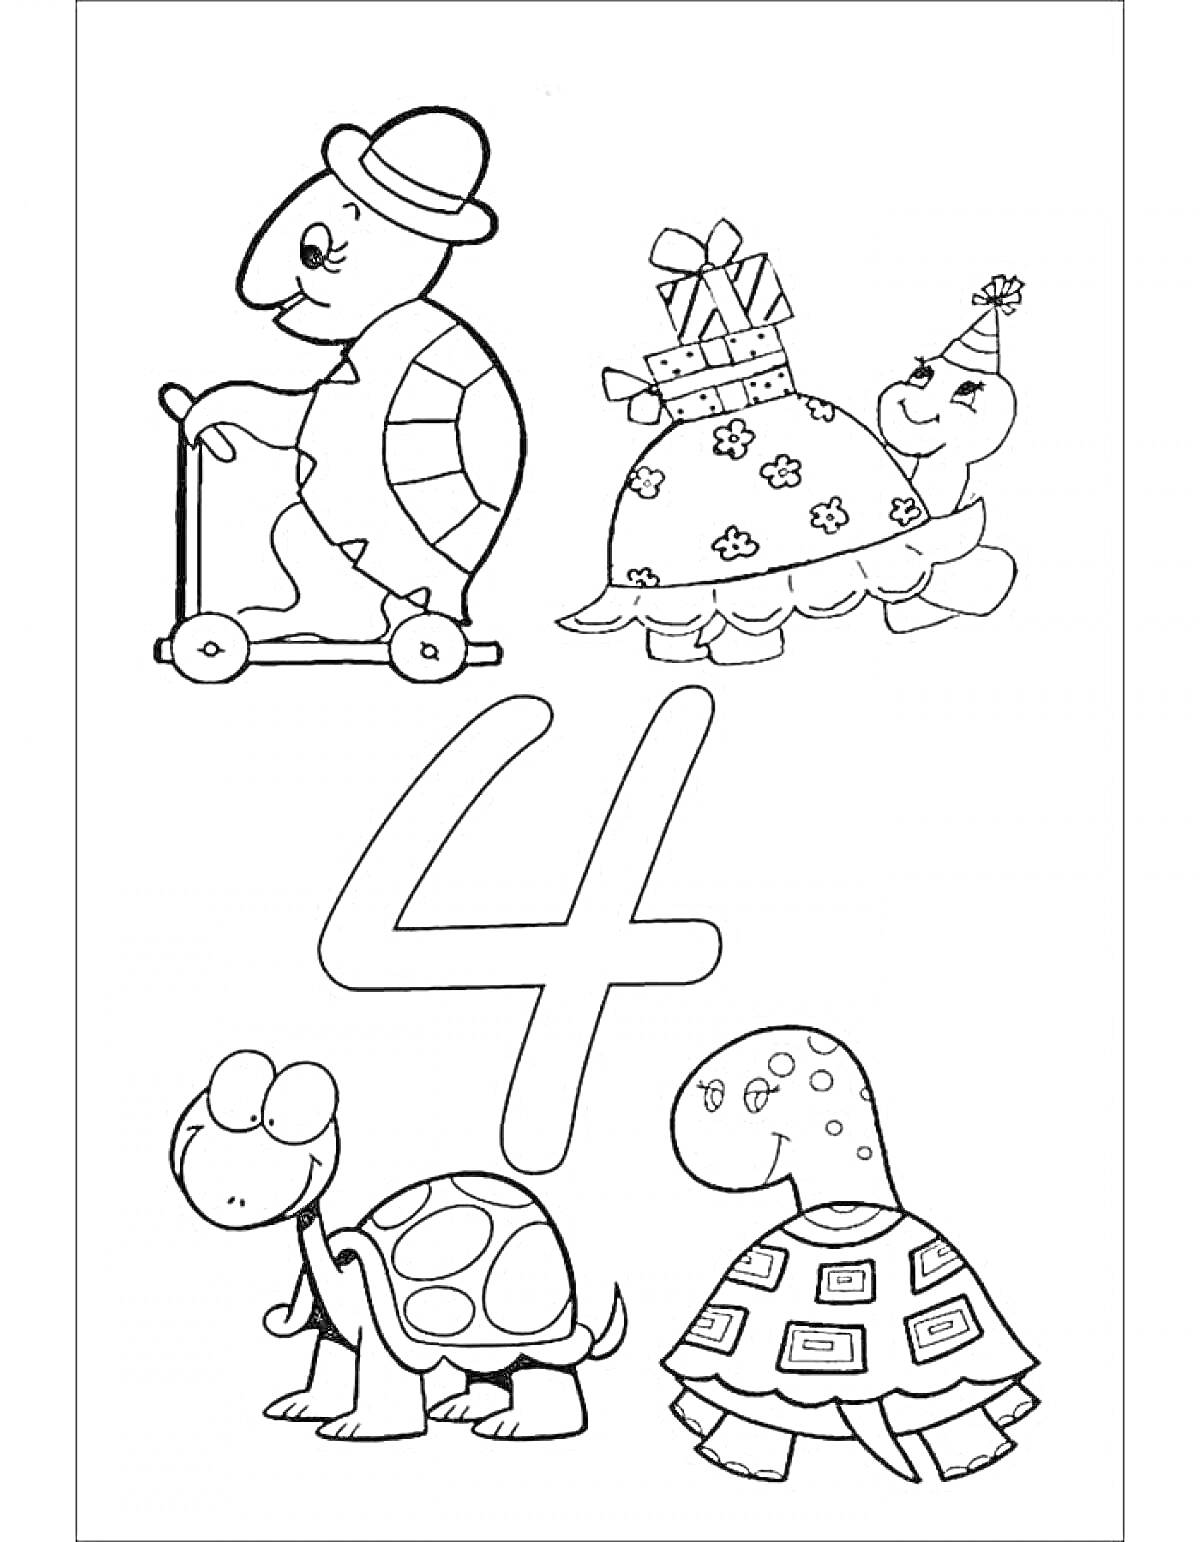 Цифра 4 с черепахами, одна едет на самокате, другая с подарками и праздничным колпачком, третья и четвертая просто ходят